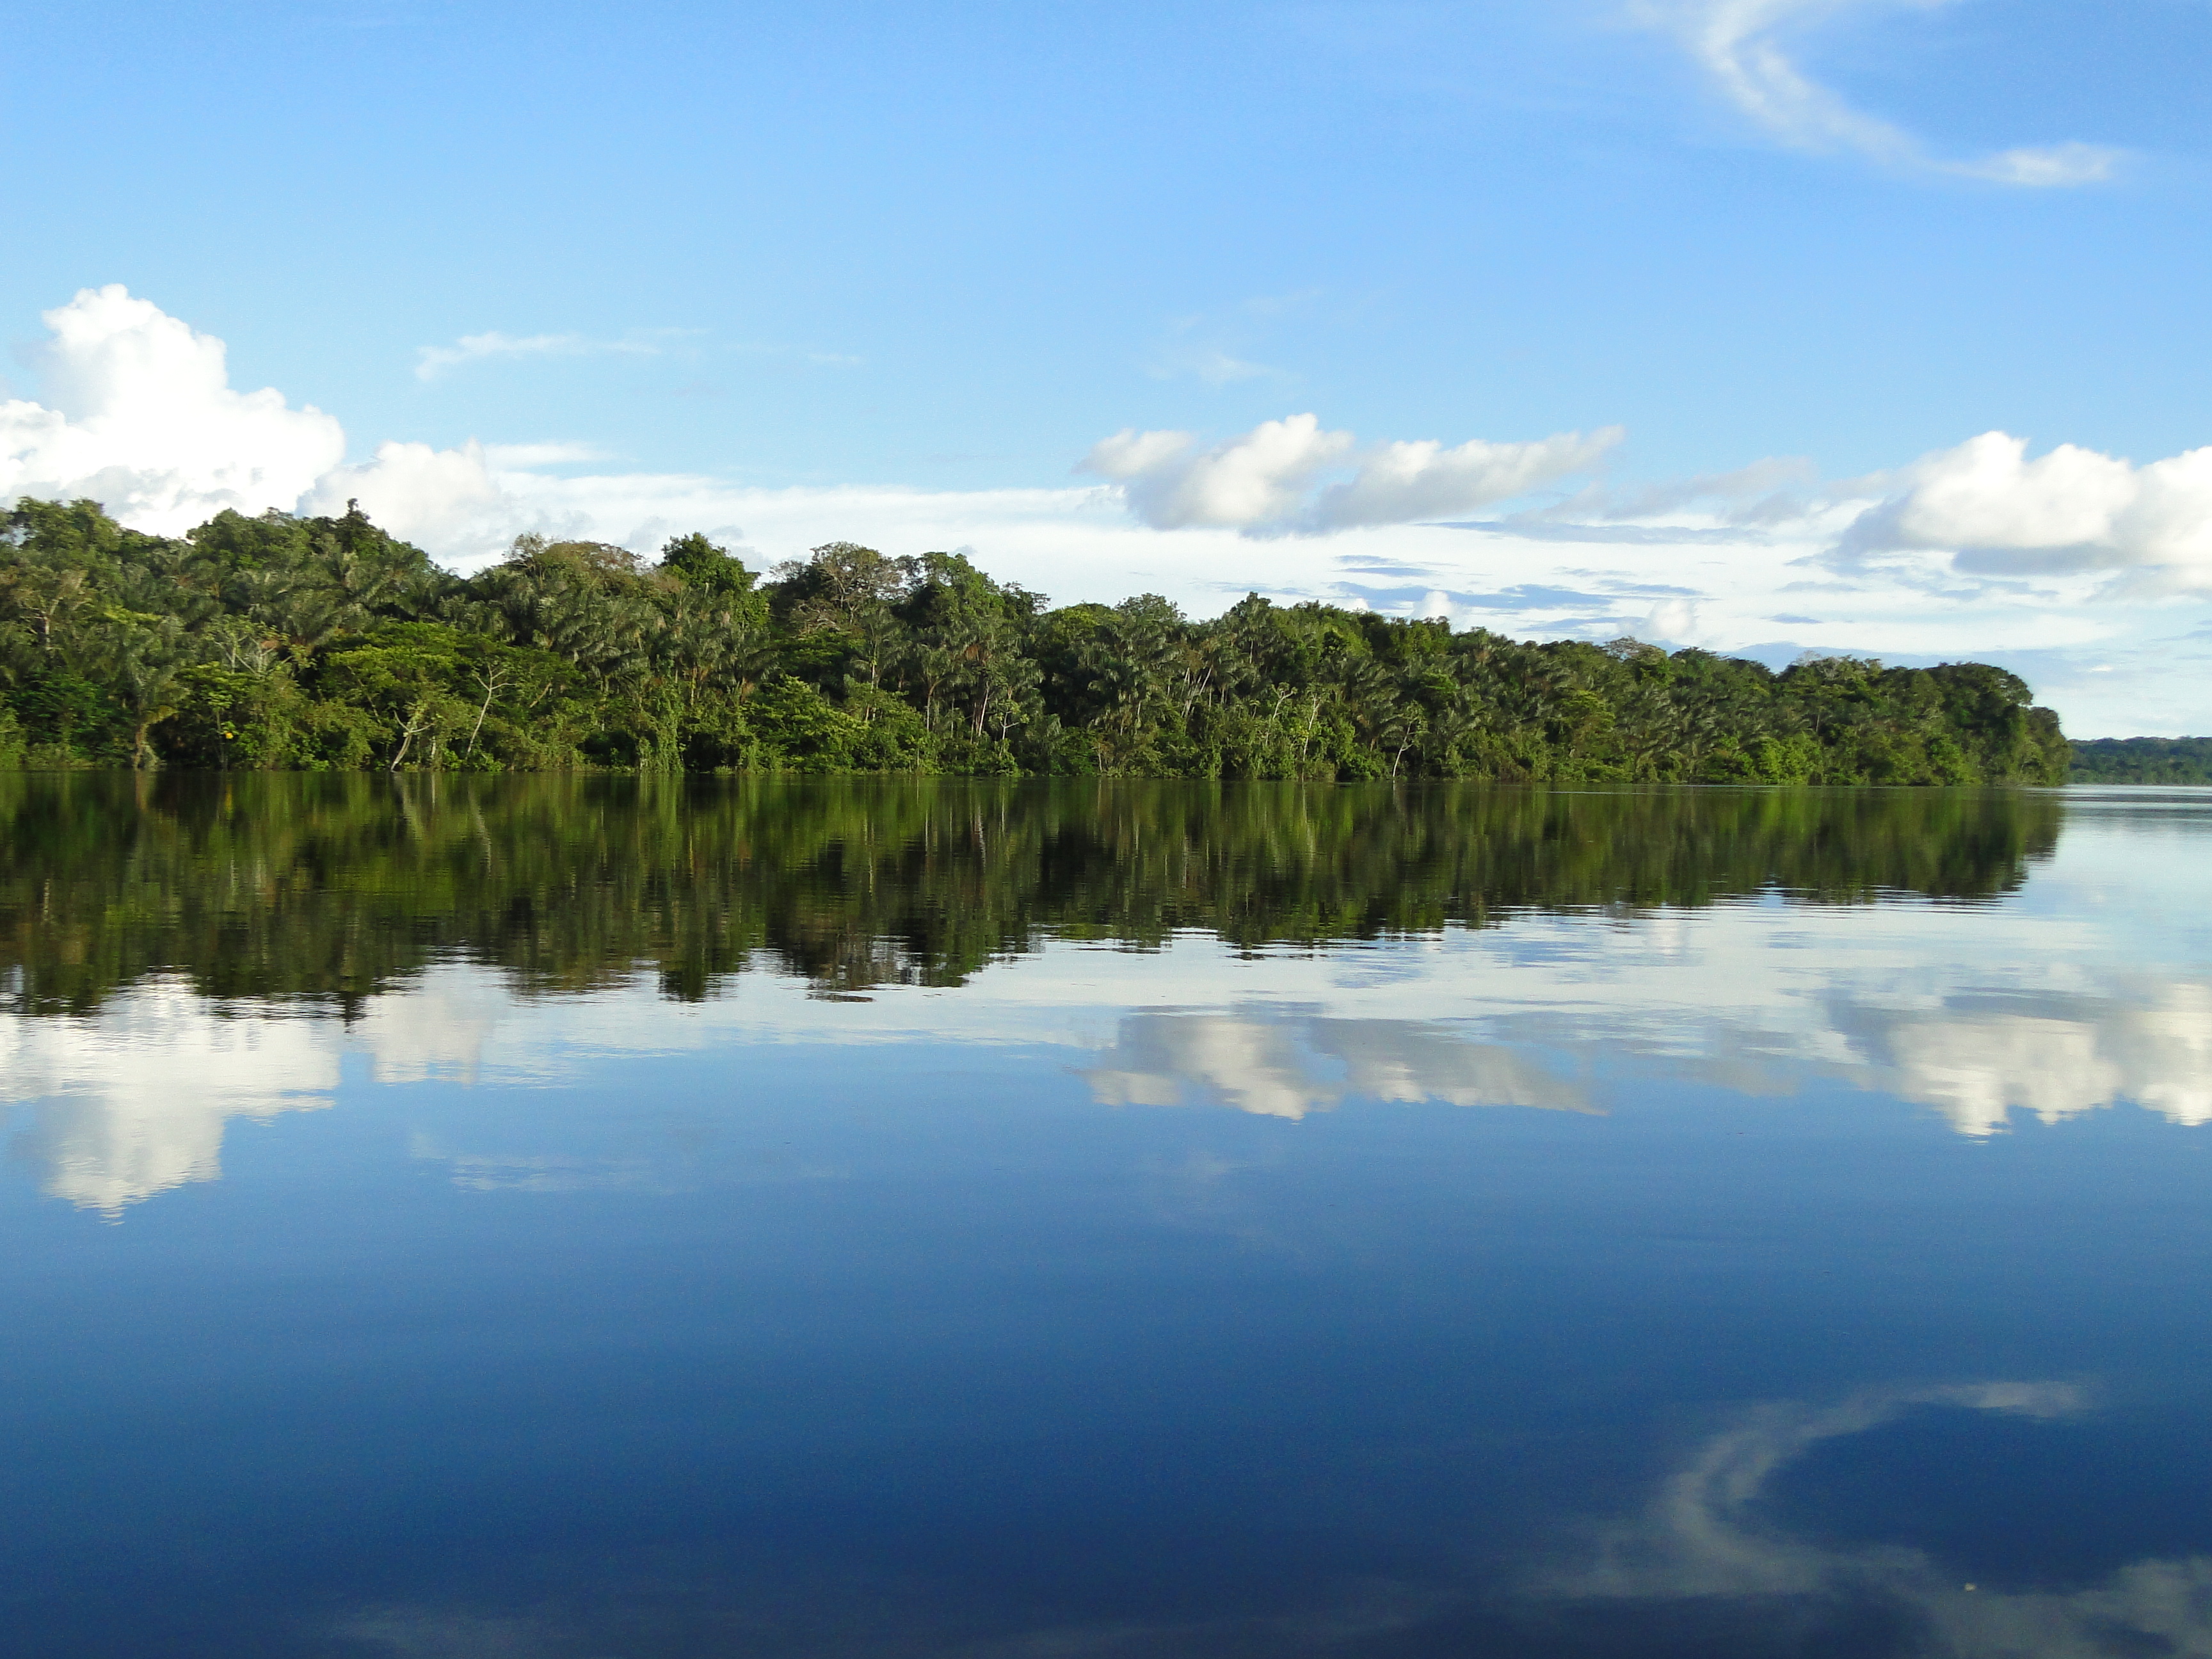 Desde 2003, o WWF-Brasil promove ações de conservação na área que viria a se tornar, em 2006, o Parque Nacional do Juruena